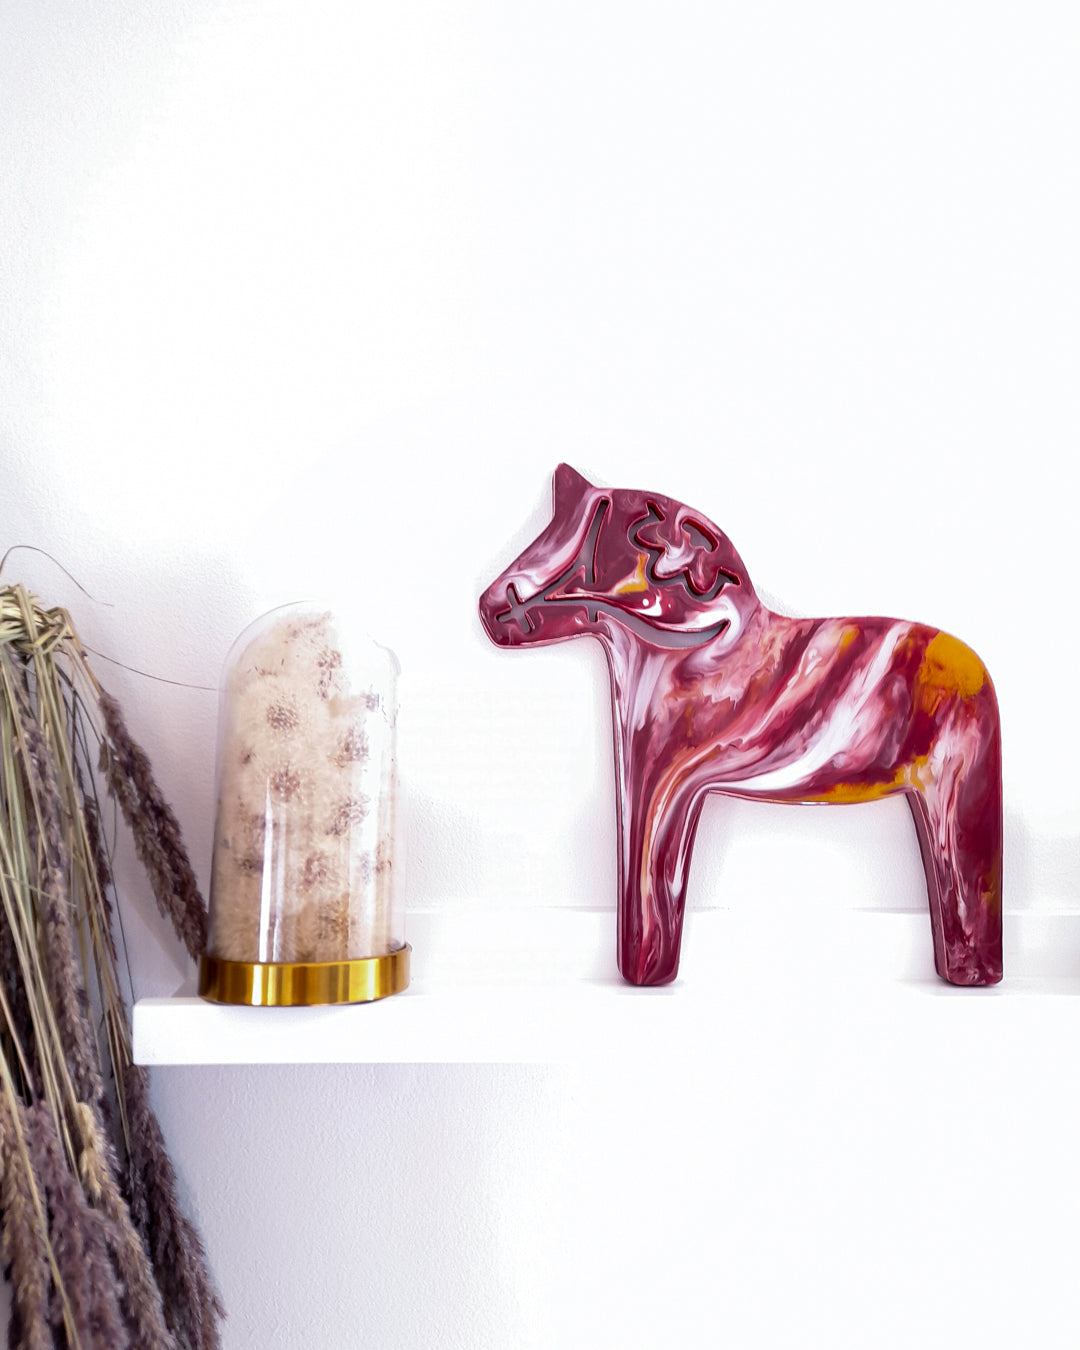 Röd dalahäst, väggdekoration - Fluflu Handgjorda Smycken & Design